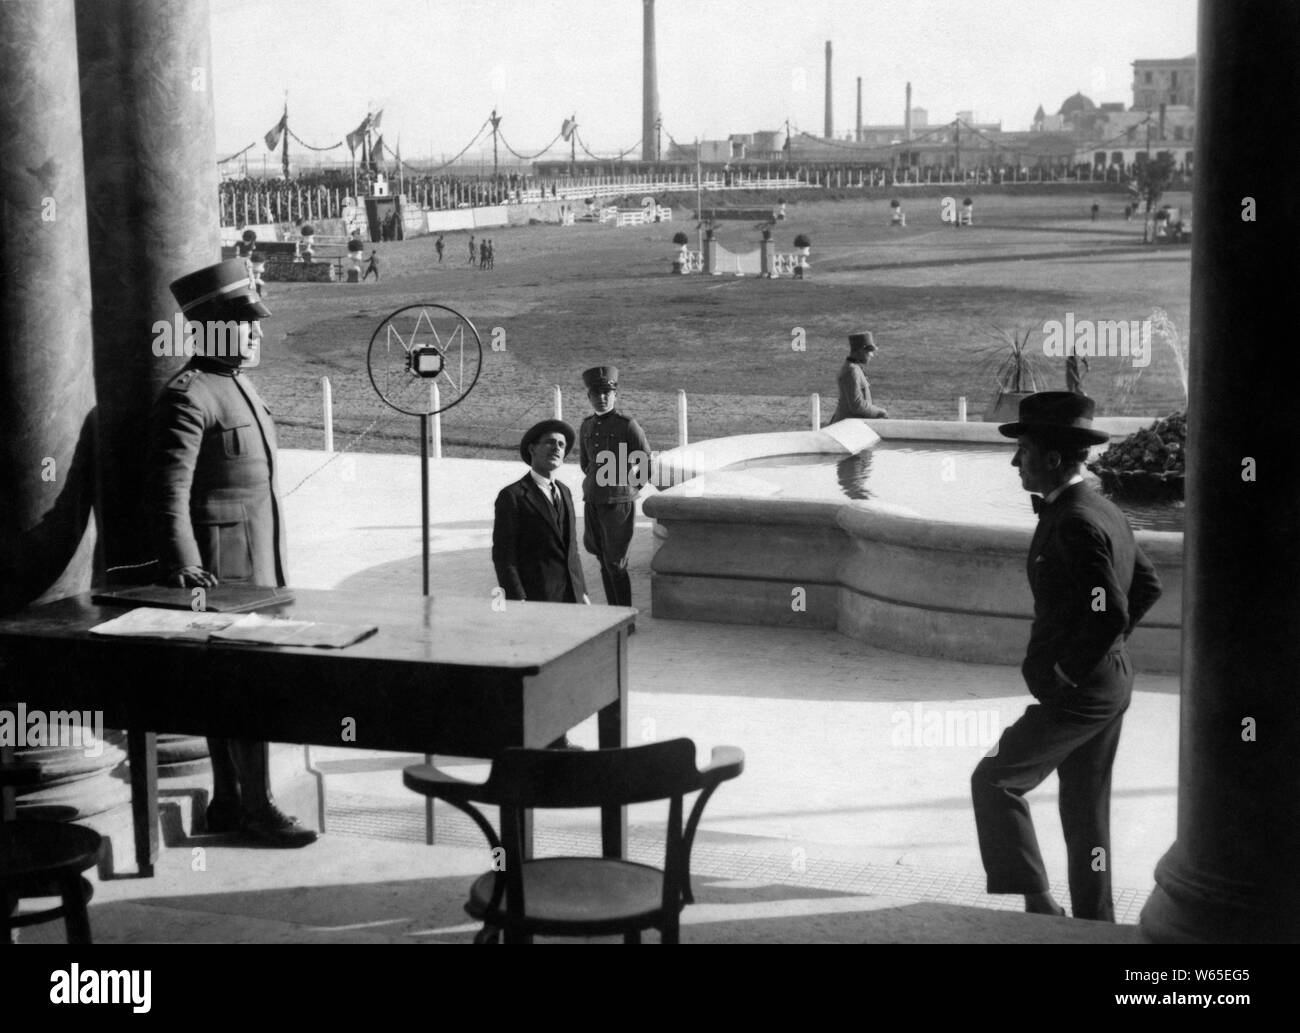 Le Lieutenant au micro durant un spectacle équestre, 1929 Banque D'Images